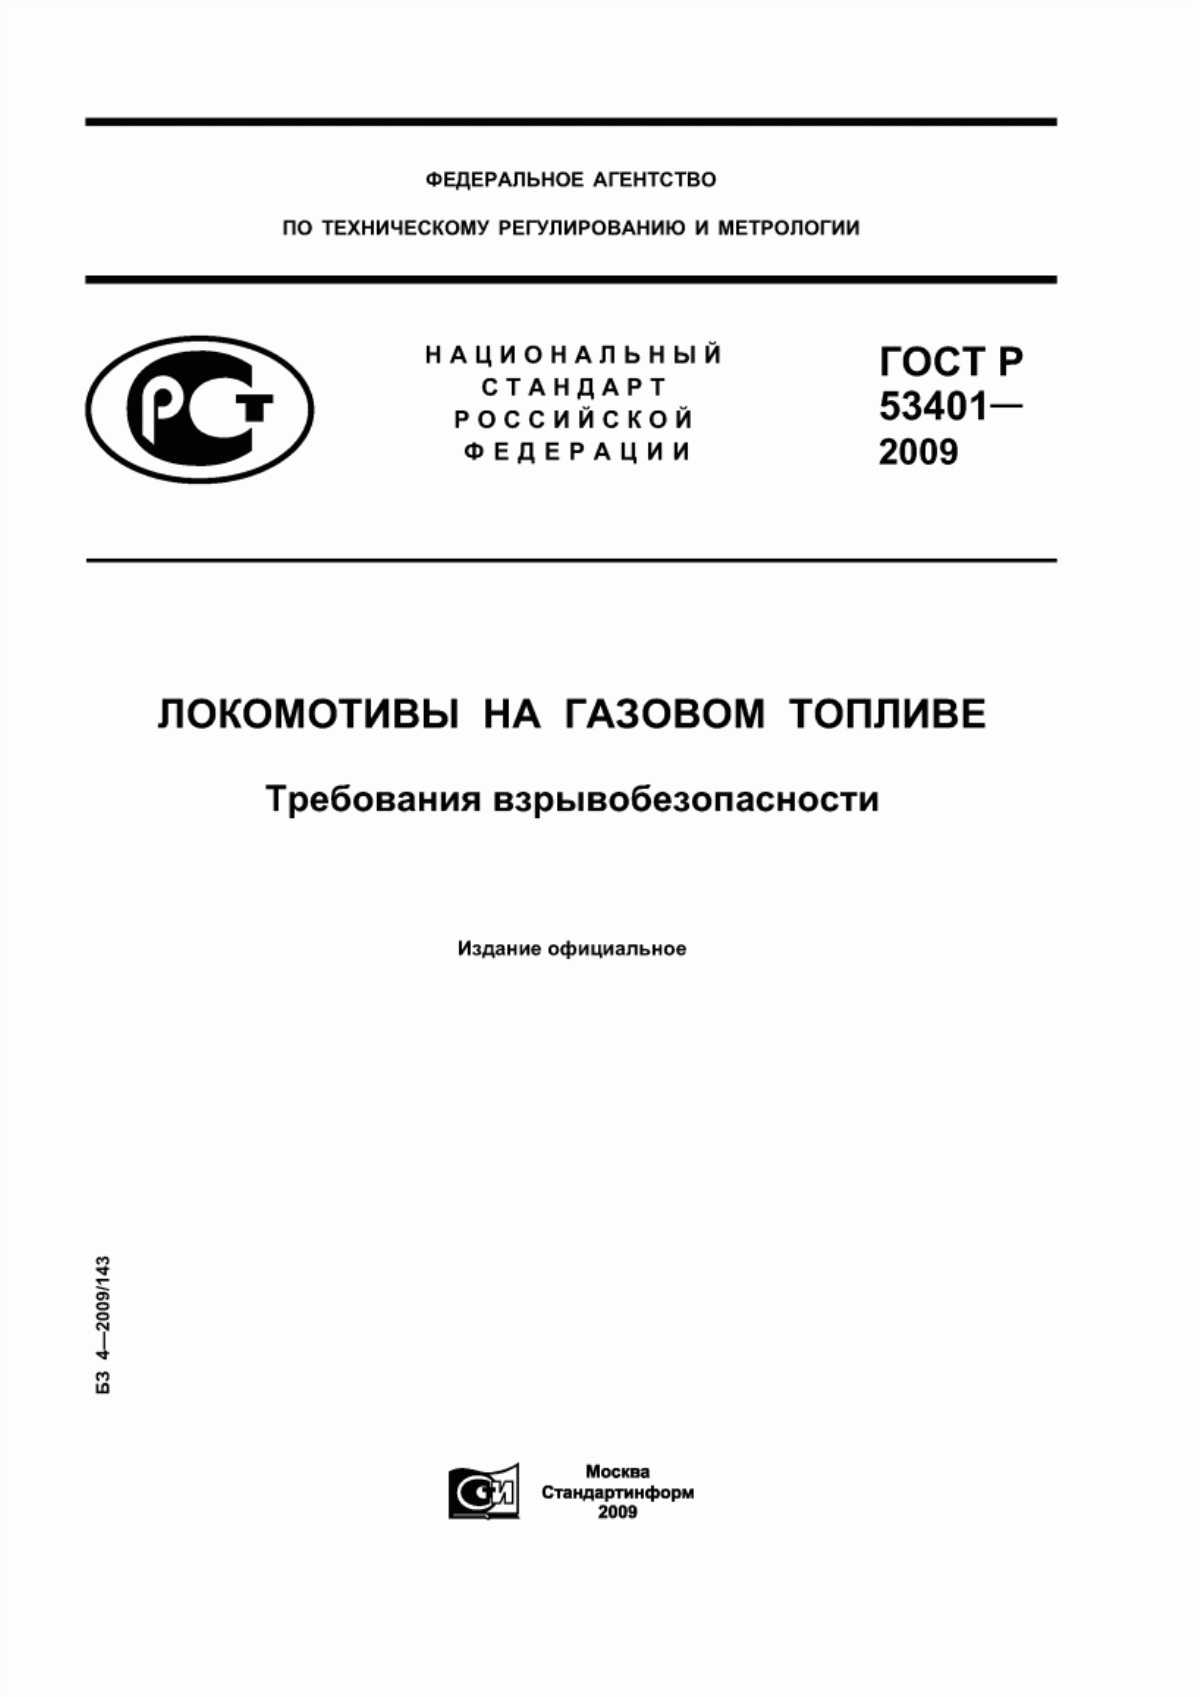 ГОСТ Р 53401-2009 Локомотивы на газовом топливе. Требования взрывобезопасности